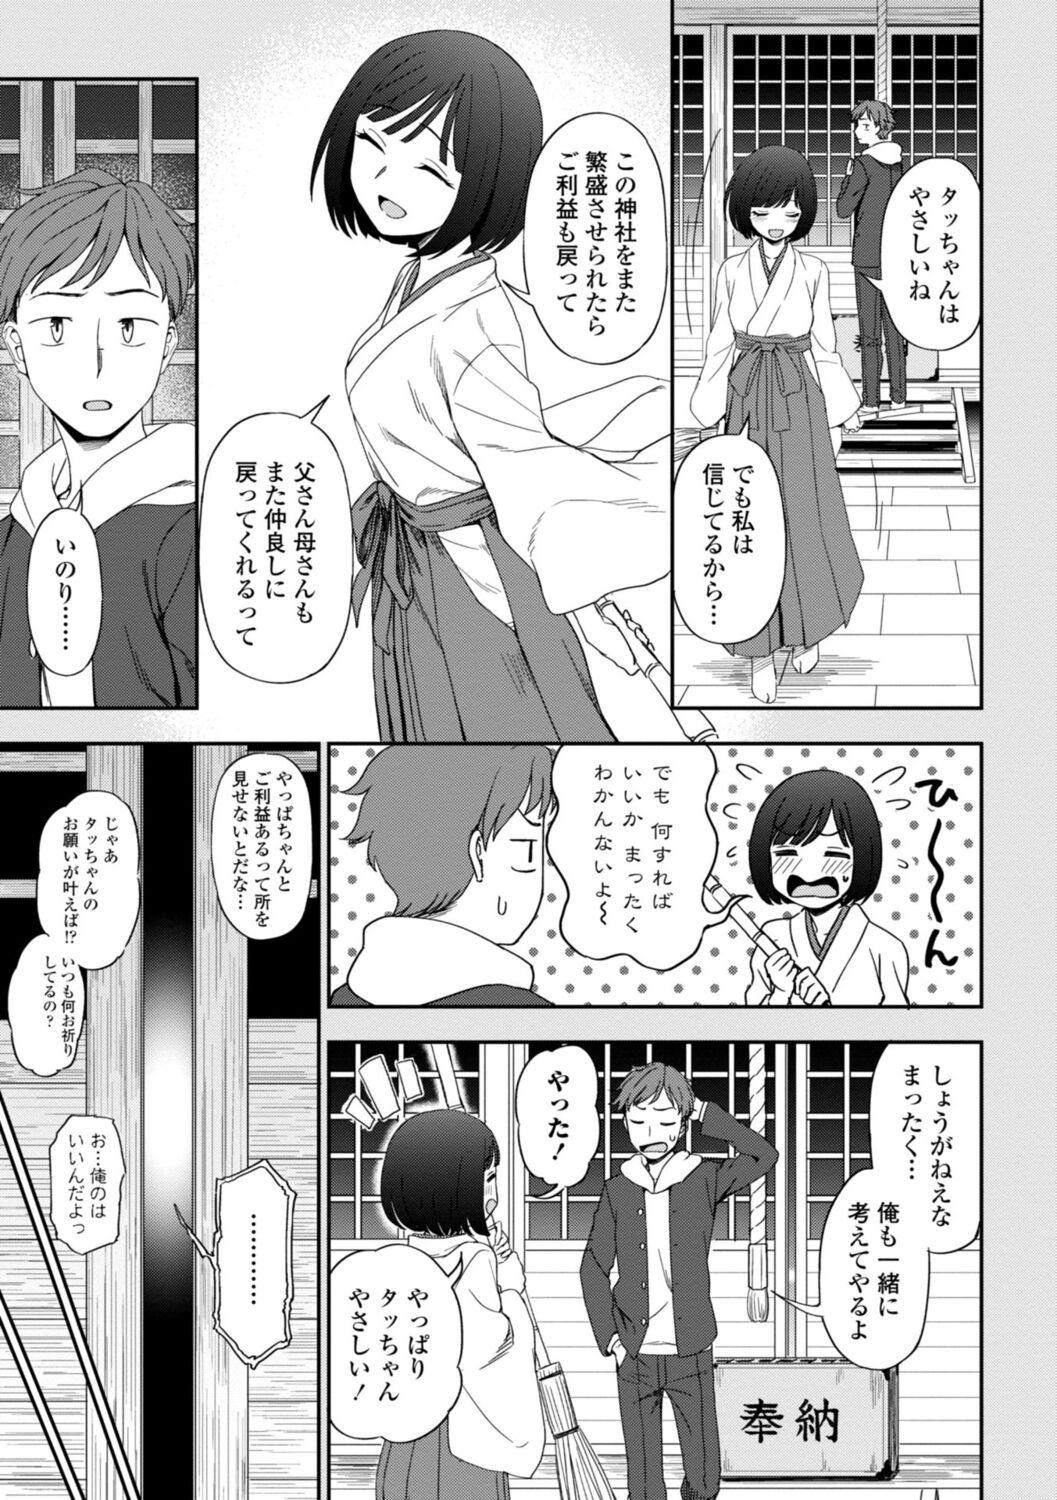 Girl On Girl Watashi no Subete Sasagemasu - I'll give you all of mine. Desnuda - Page 7